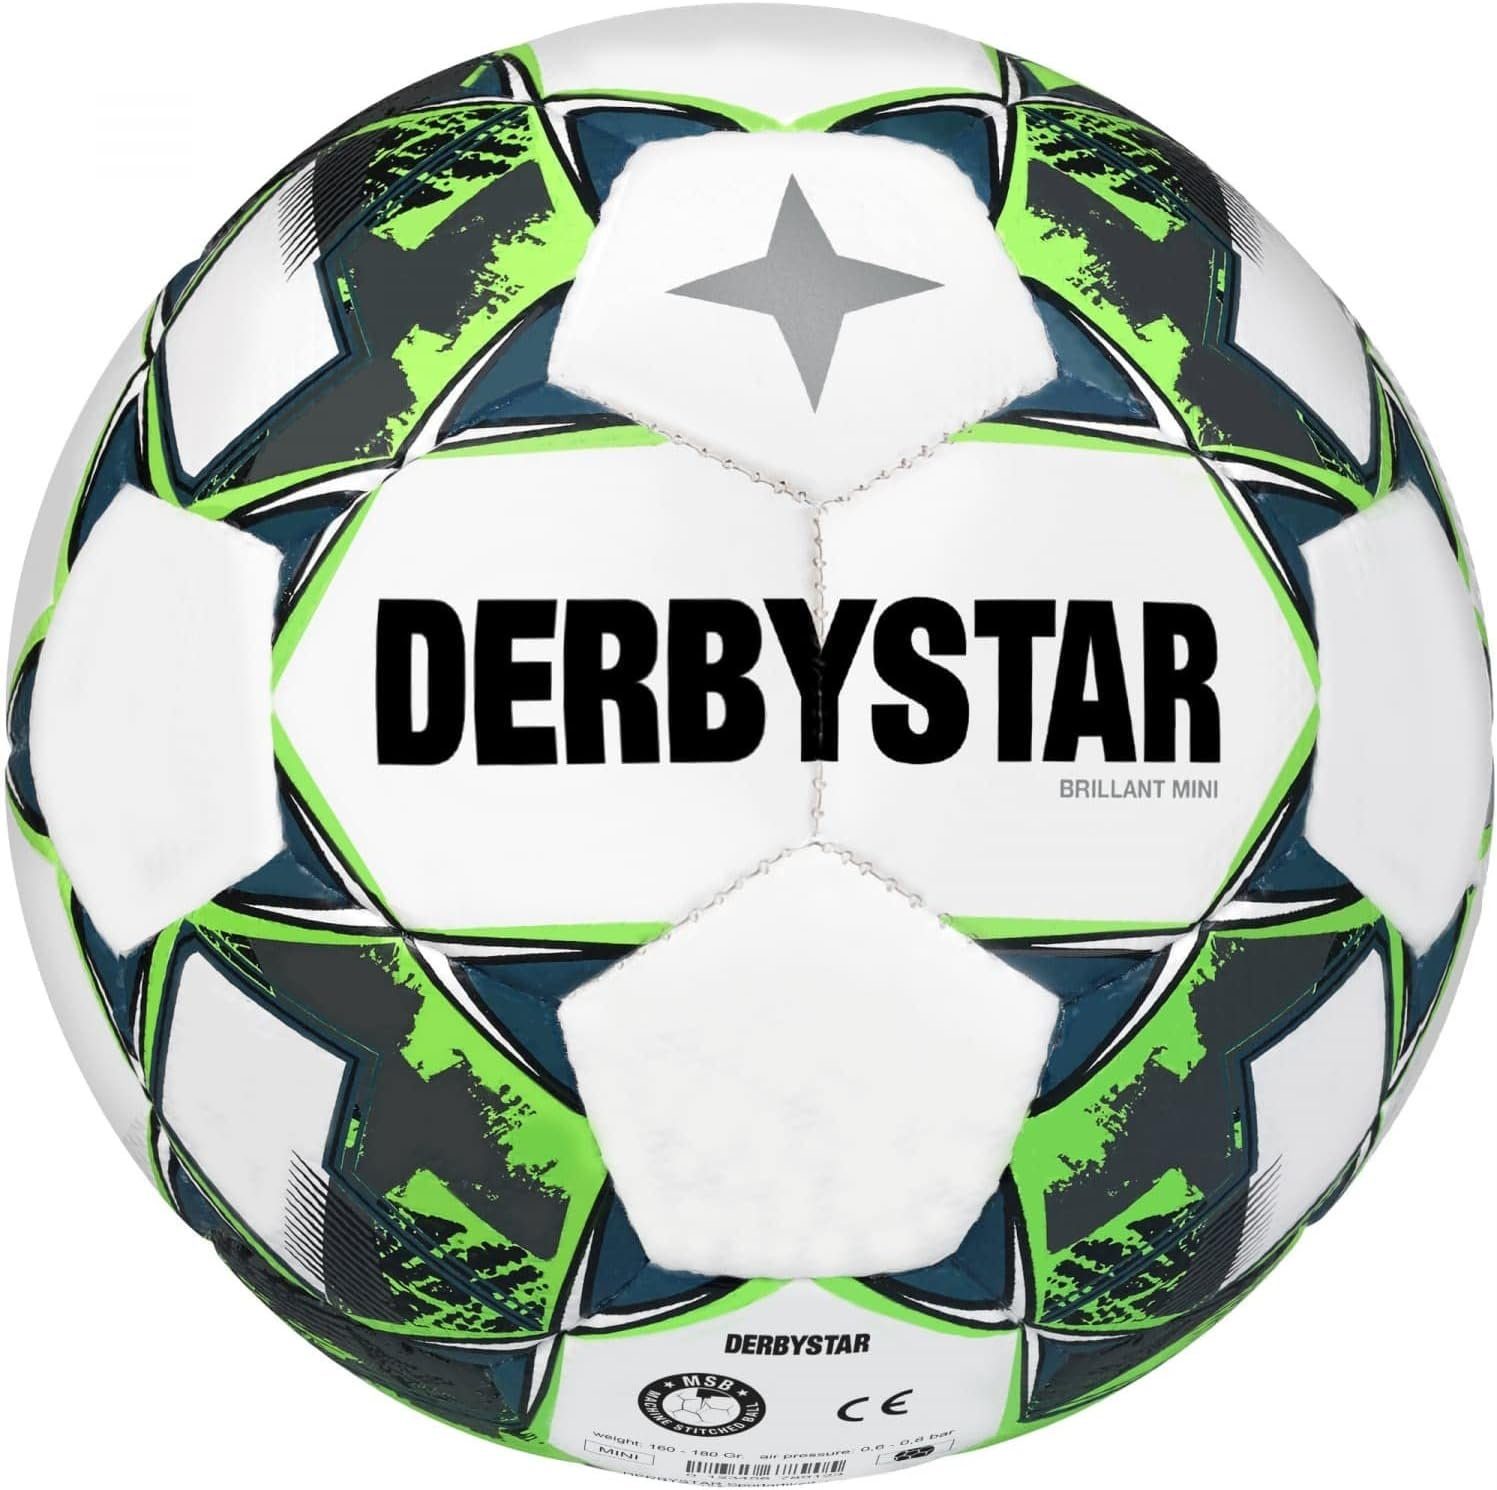 FB Brillant Mini Derbystar Derbystar V22 Fußball